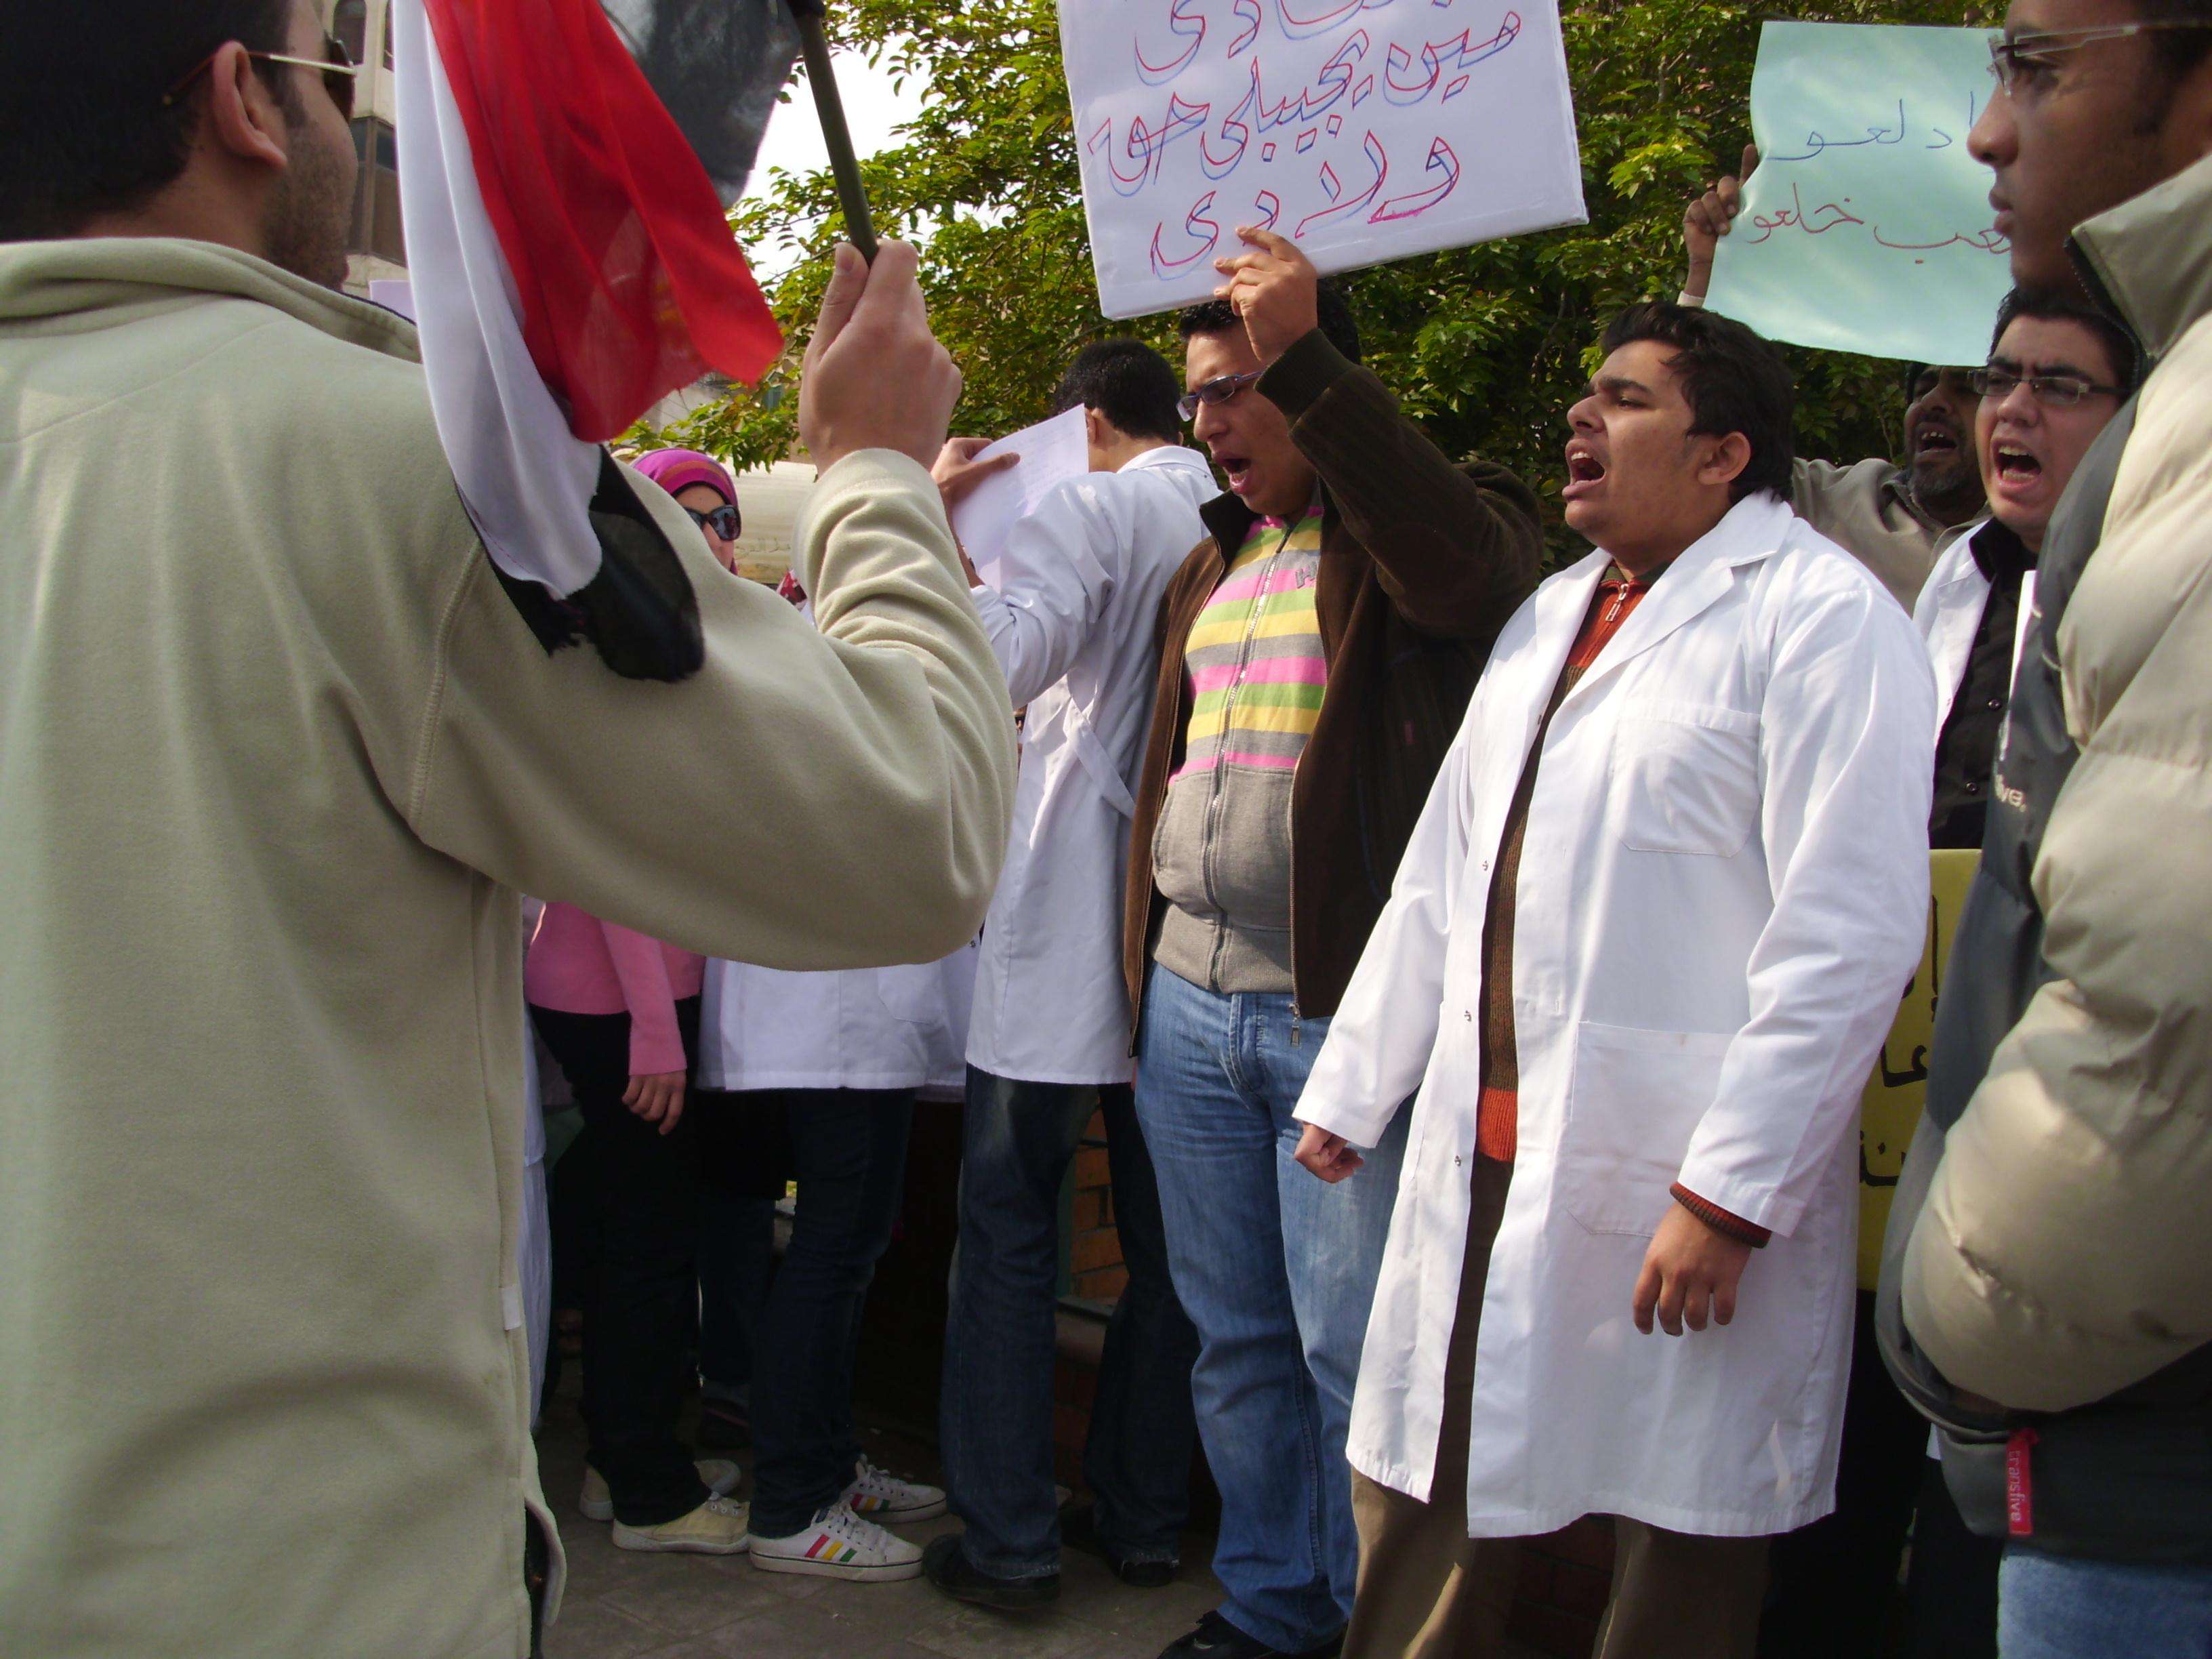 أطباء الإسماعيلية يطالبون بخلع مبارك